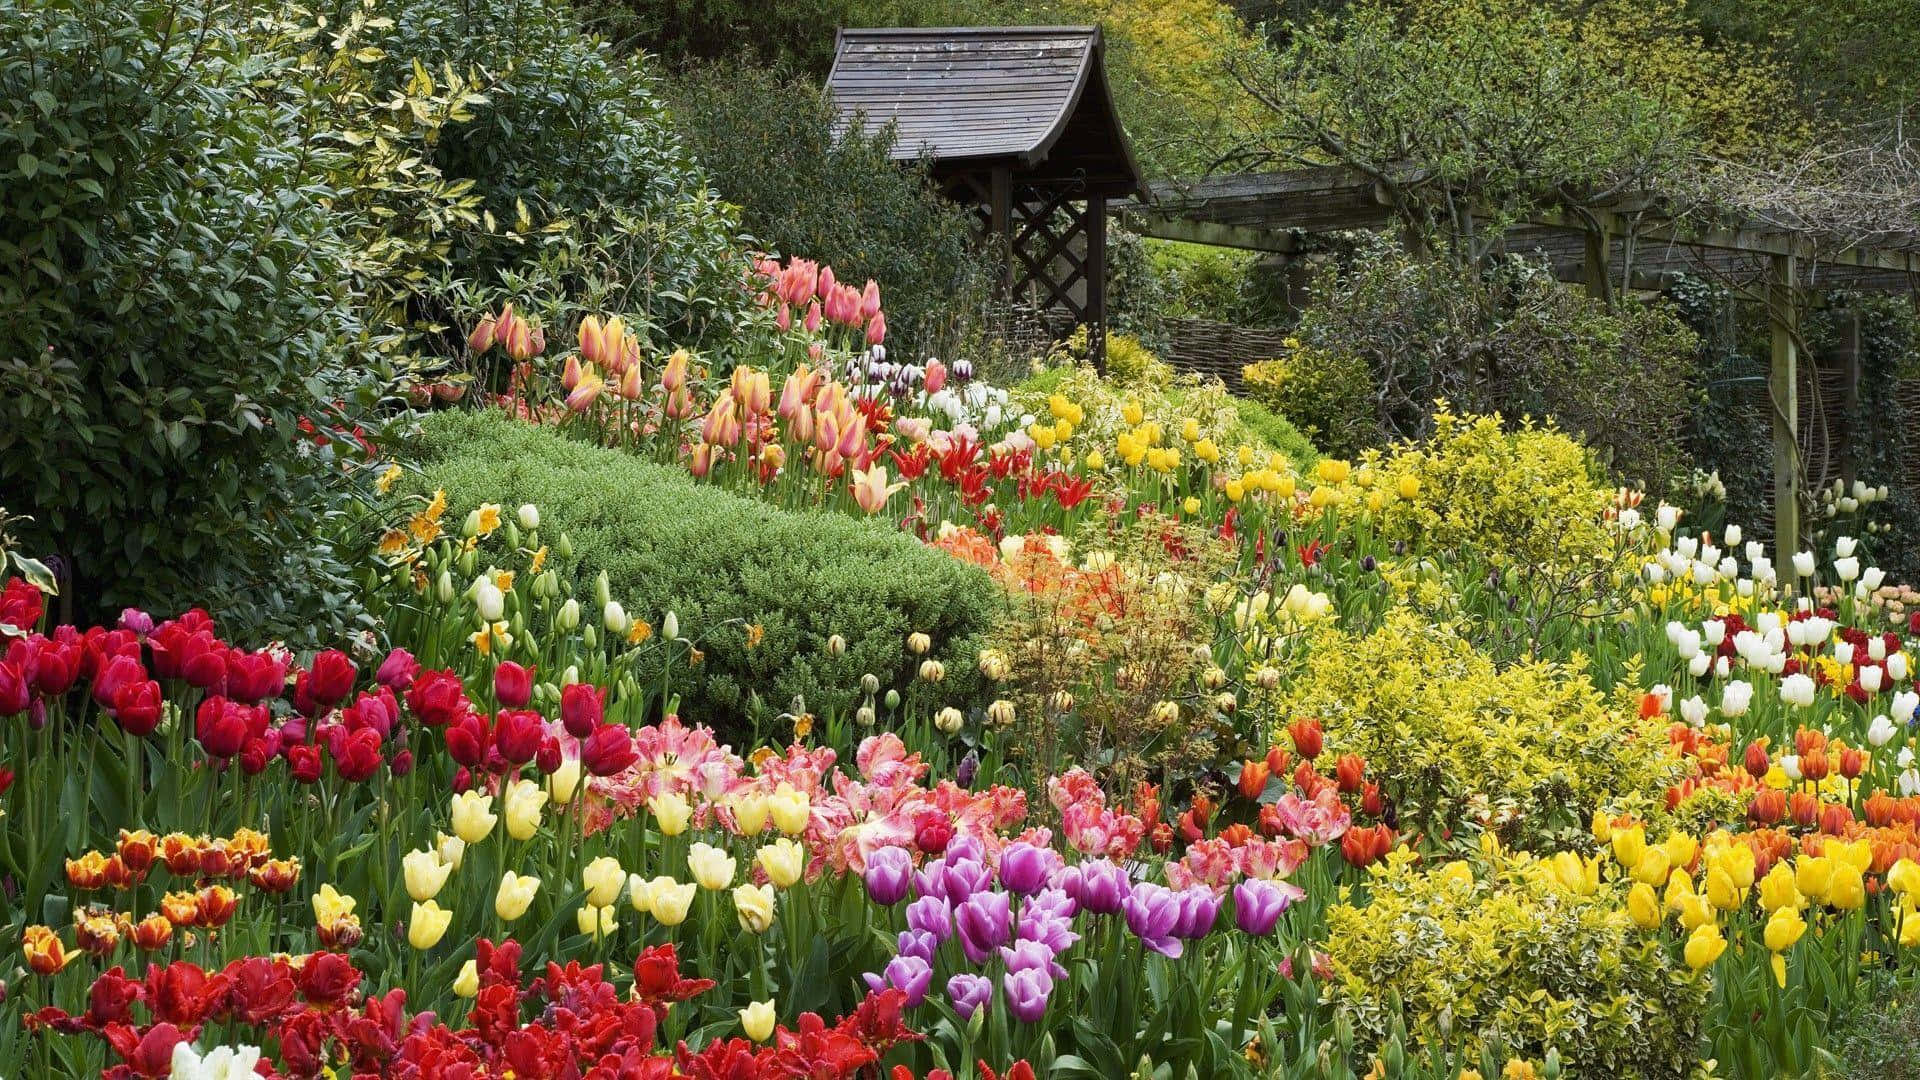 Enchanted Tulip Garden Wooden Gazebo Wallpaper